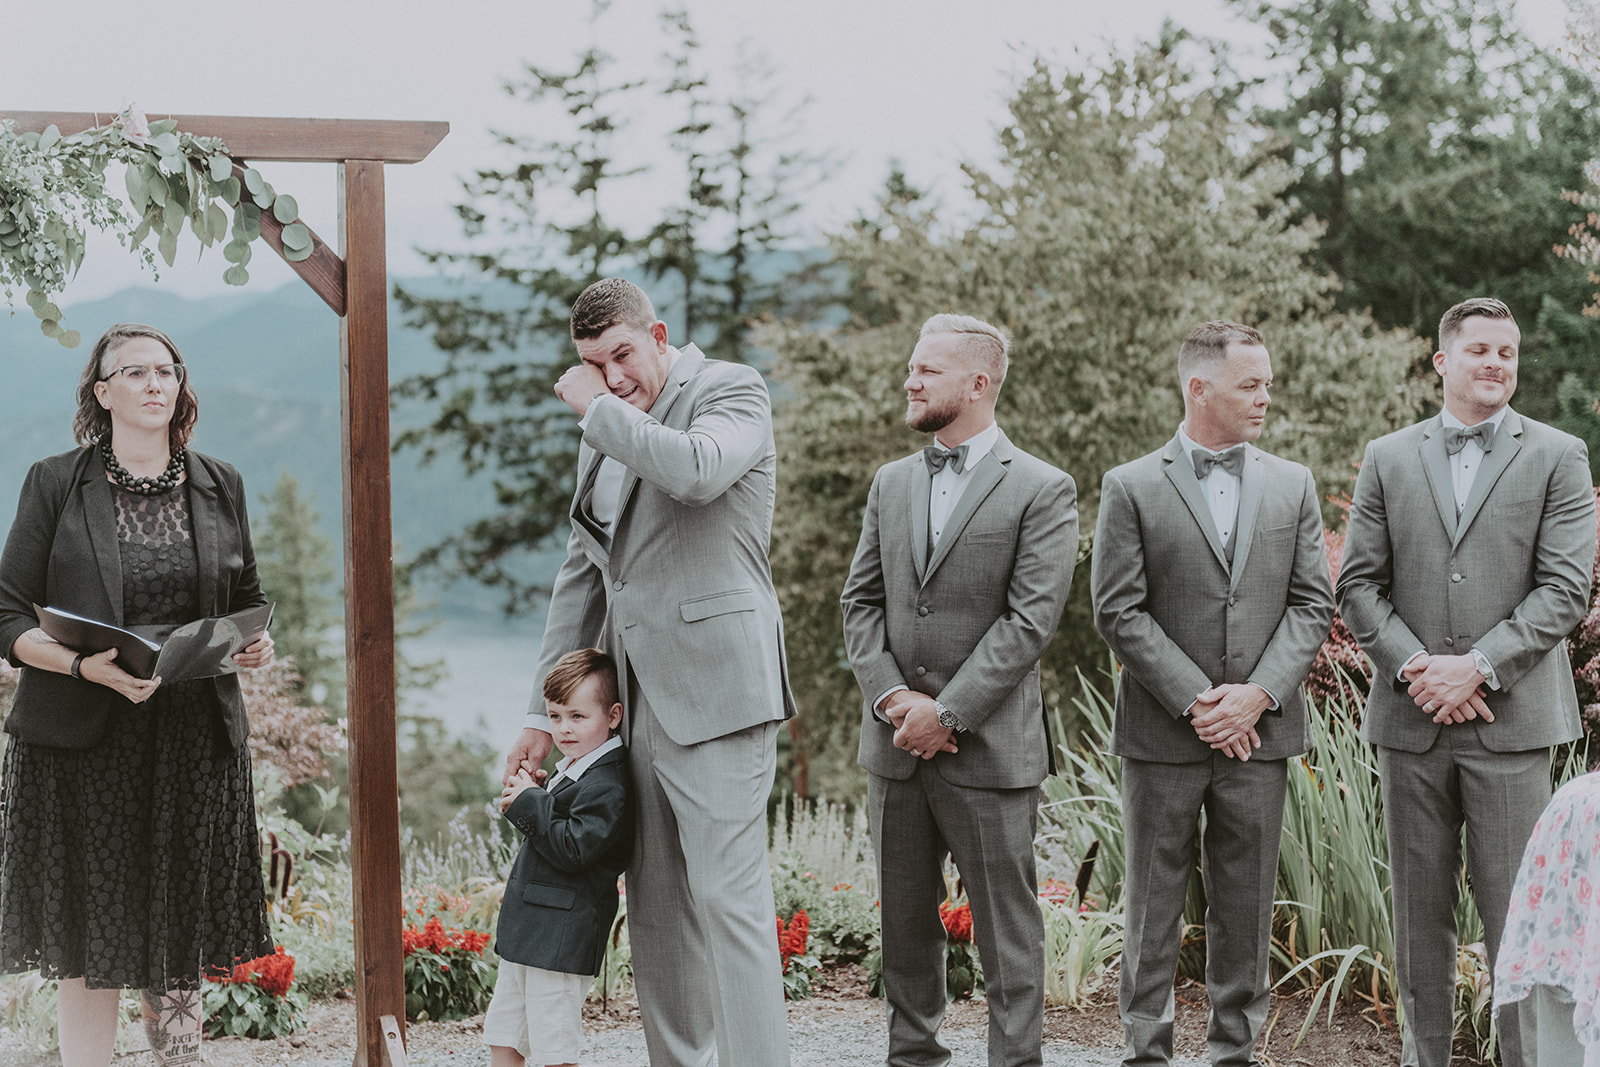 Vancouver Island wedding ceremony